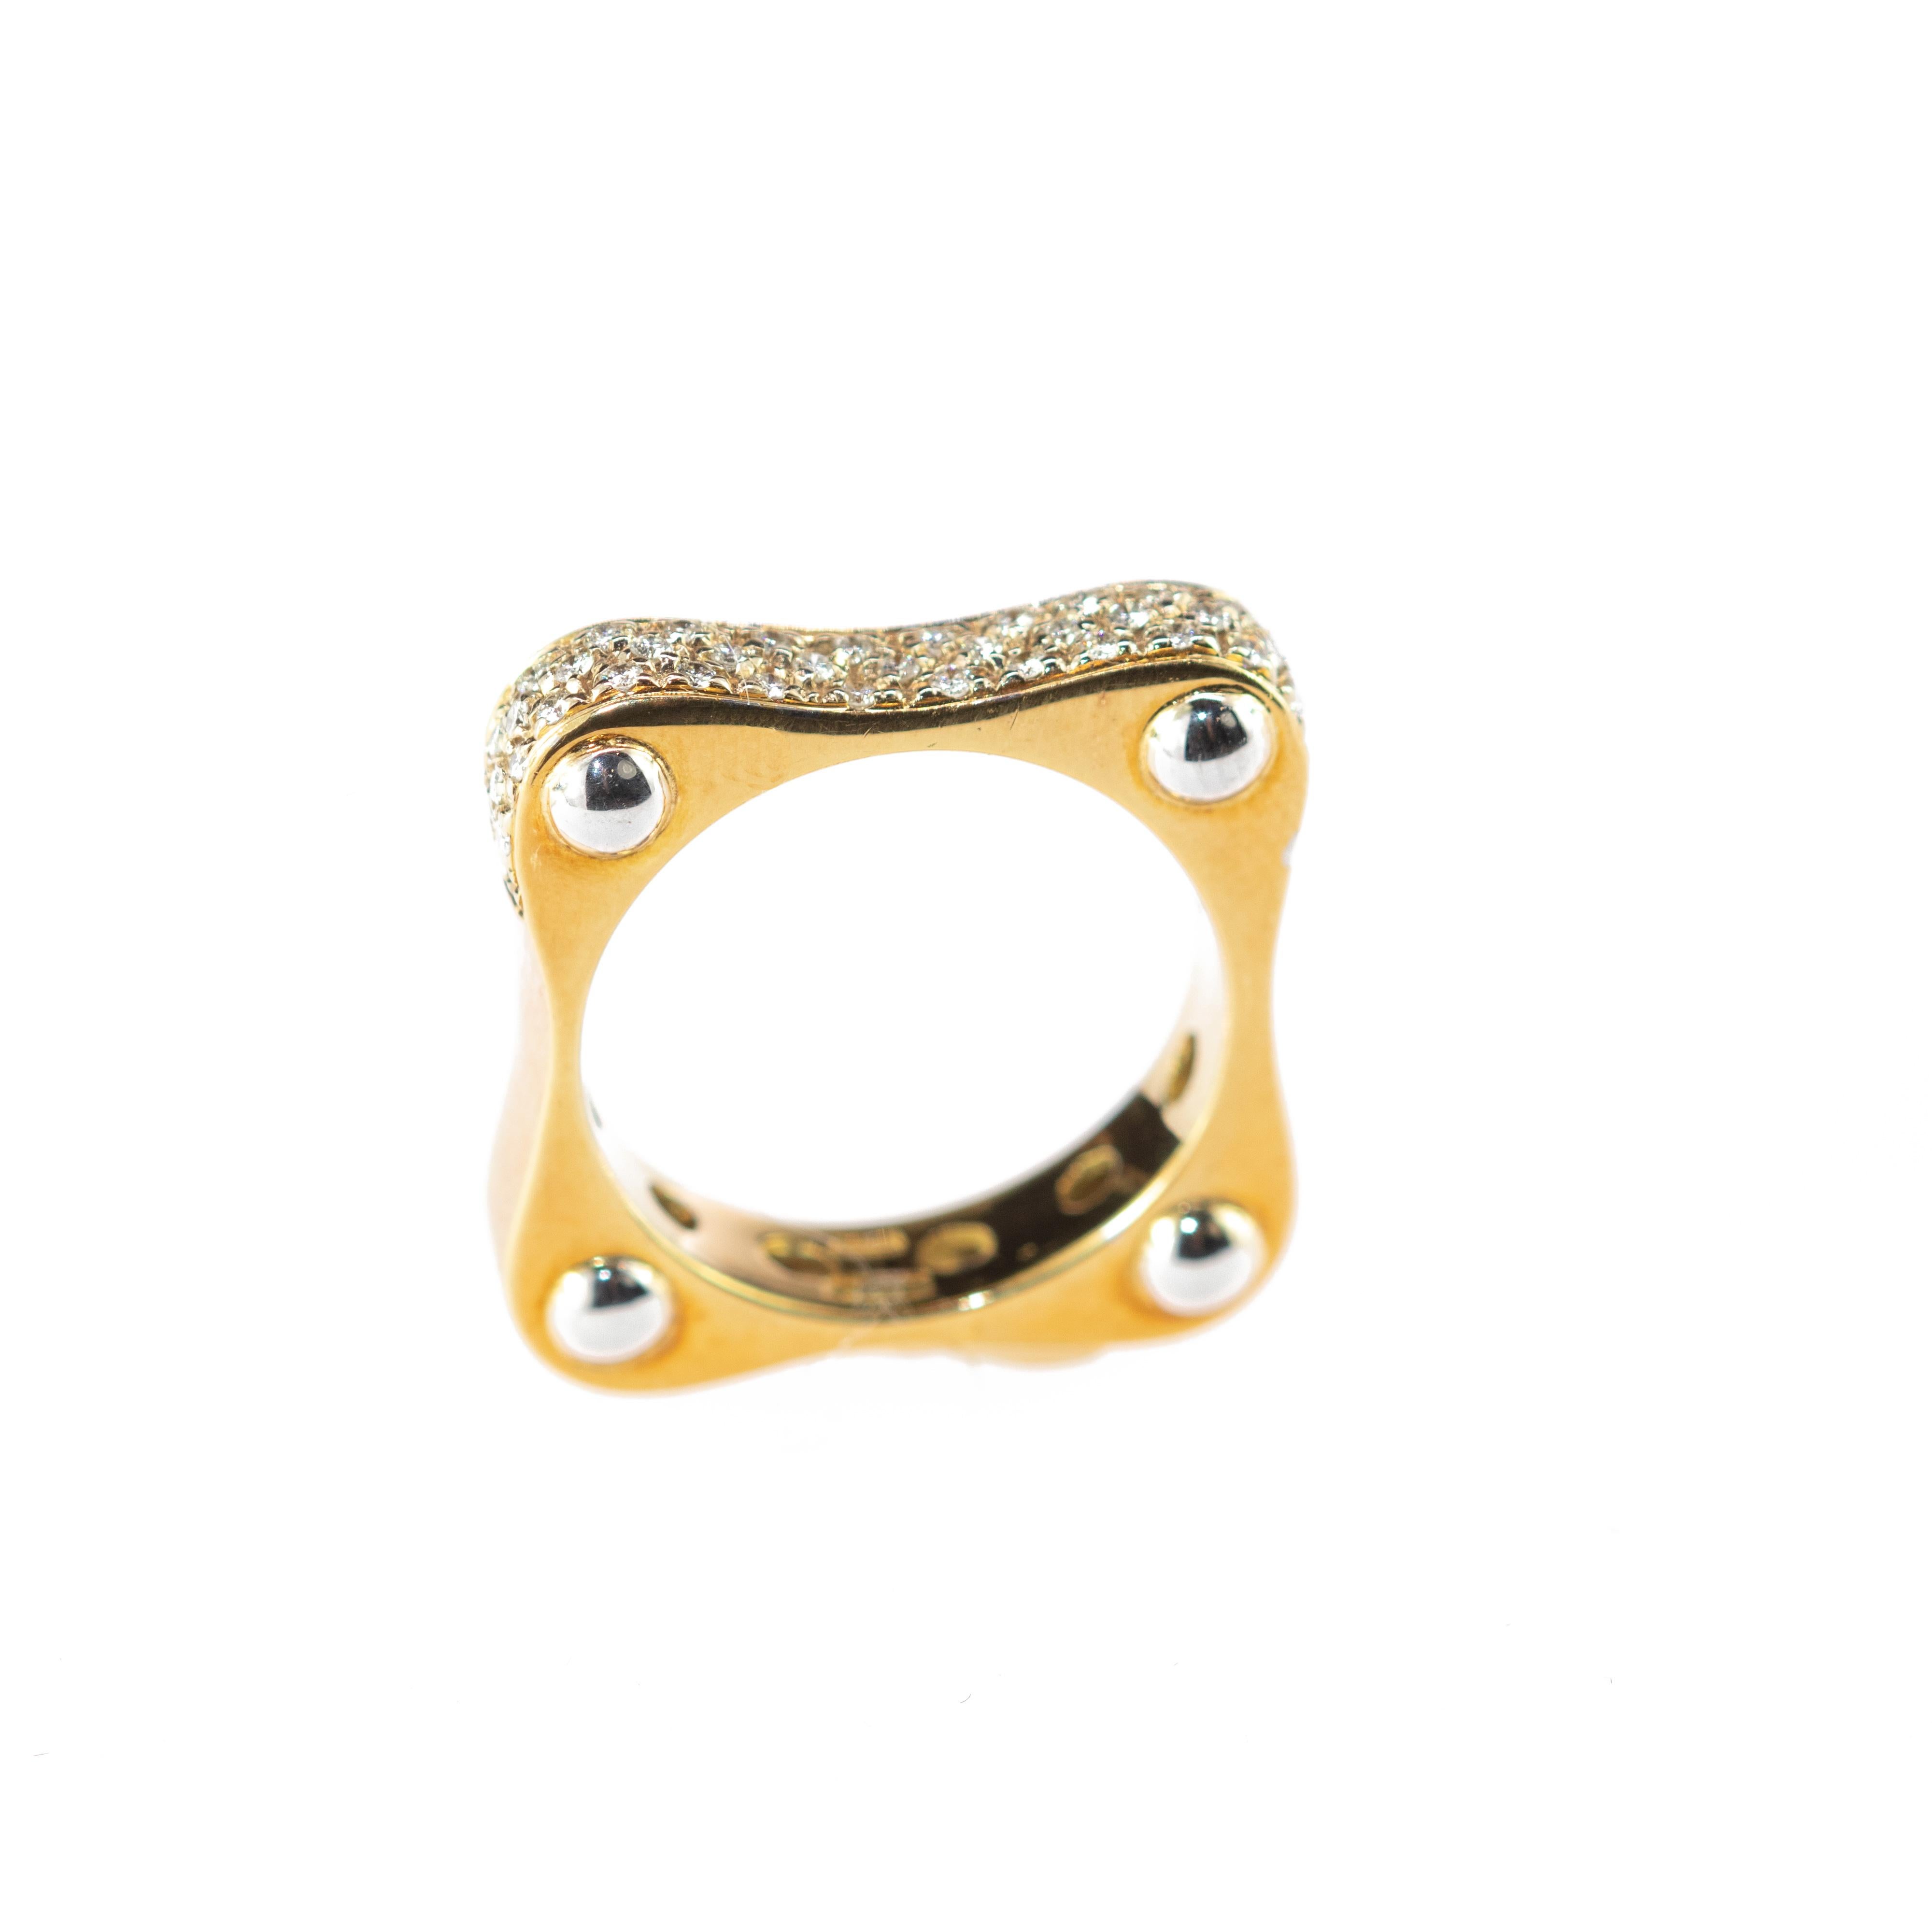 Round Diamond 18 Karat Yellow Gold Band Square Minimalist Handmade Ring 2